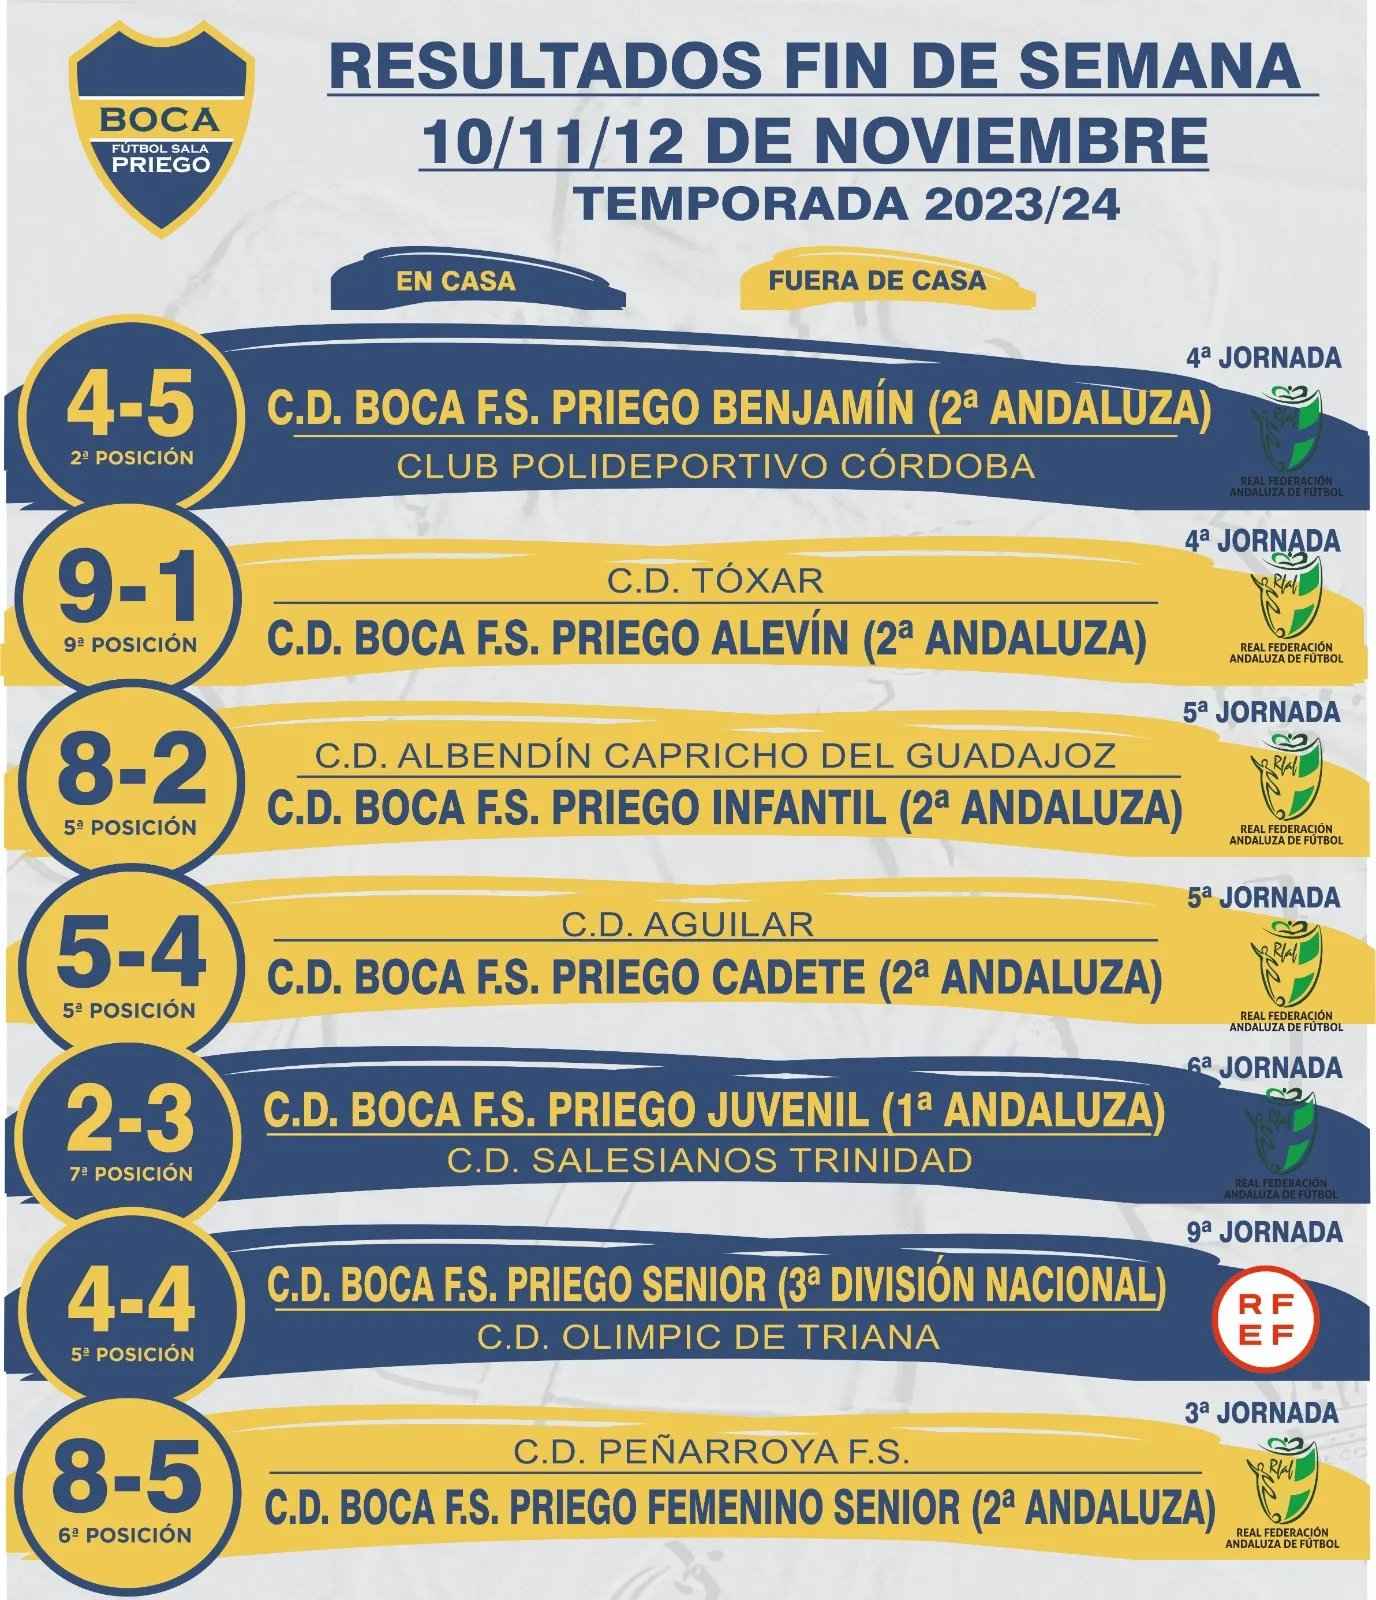 Resultados de los equipos del Boca Priego FS.